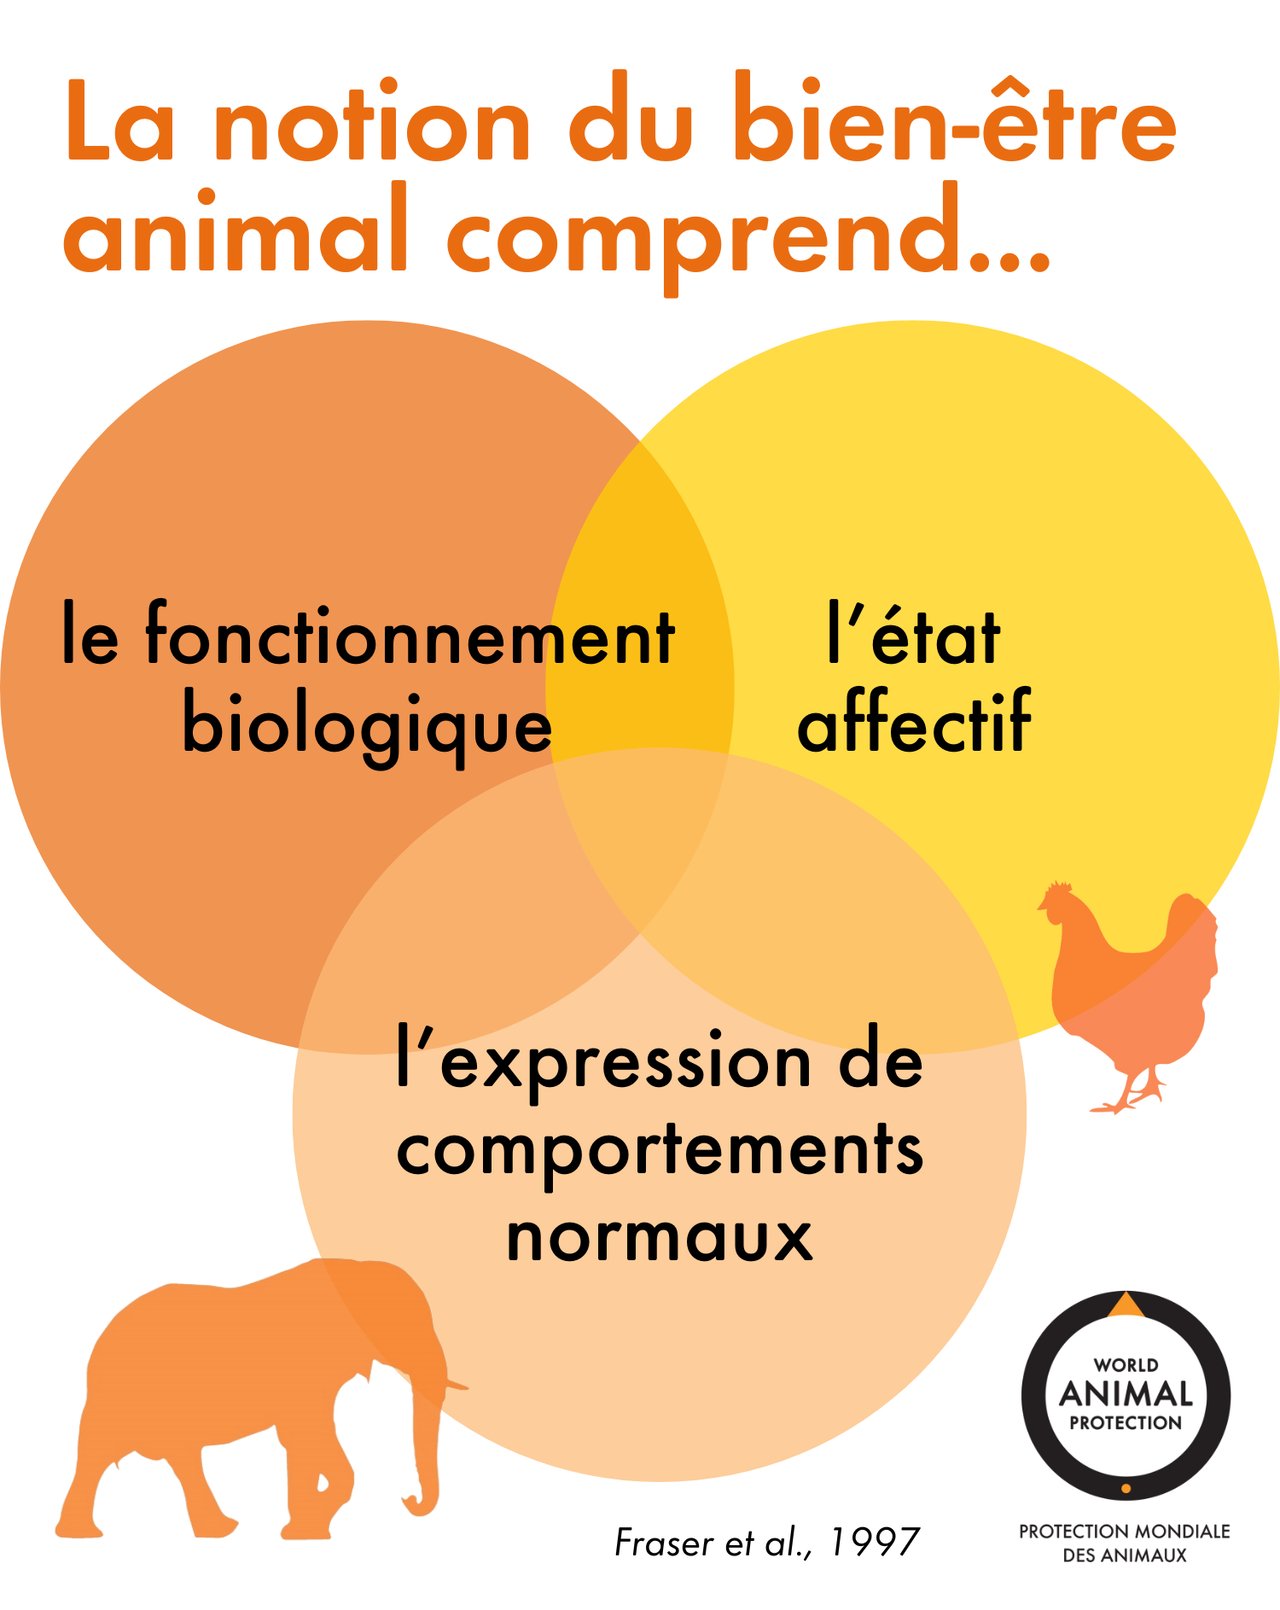 Le concept du bien-être animal comporte trois éléments